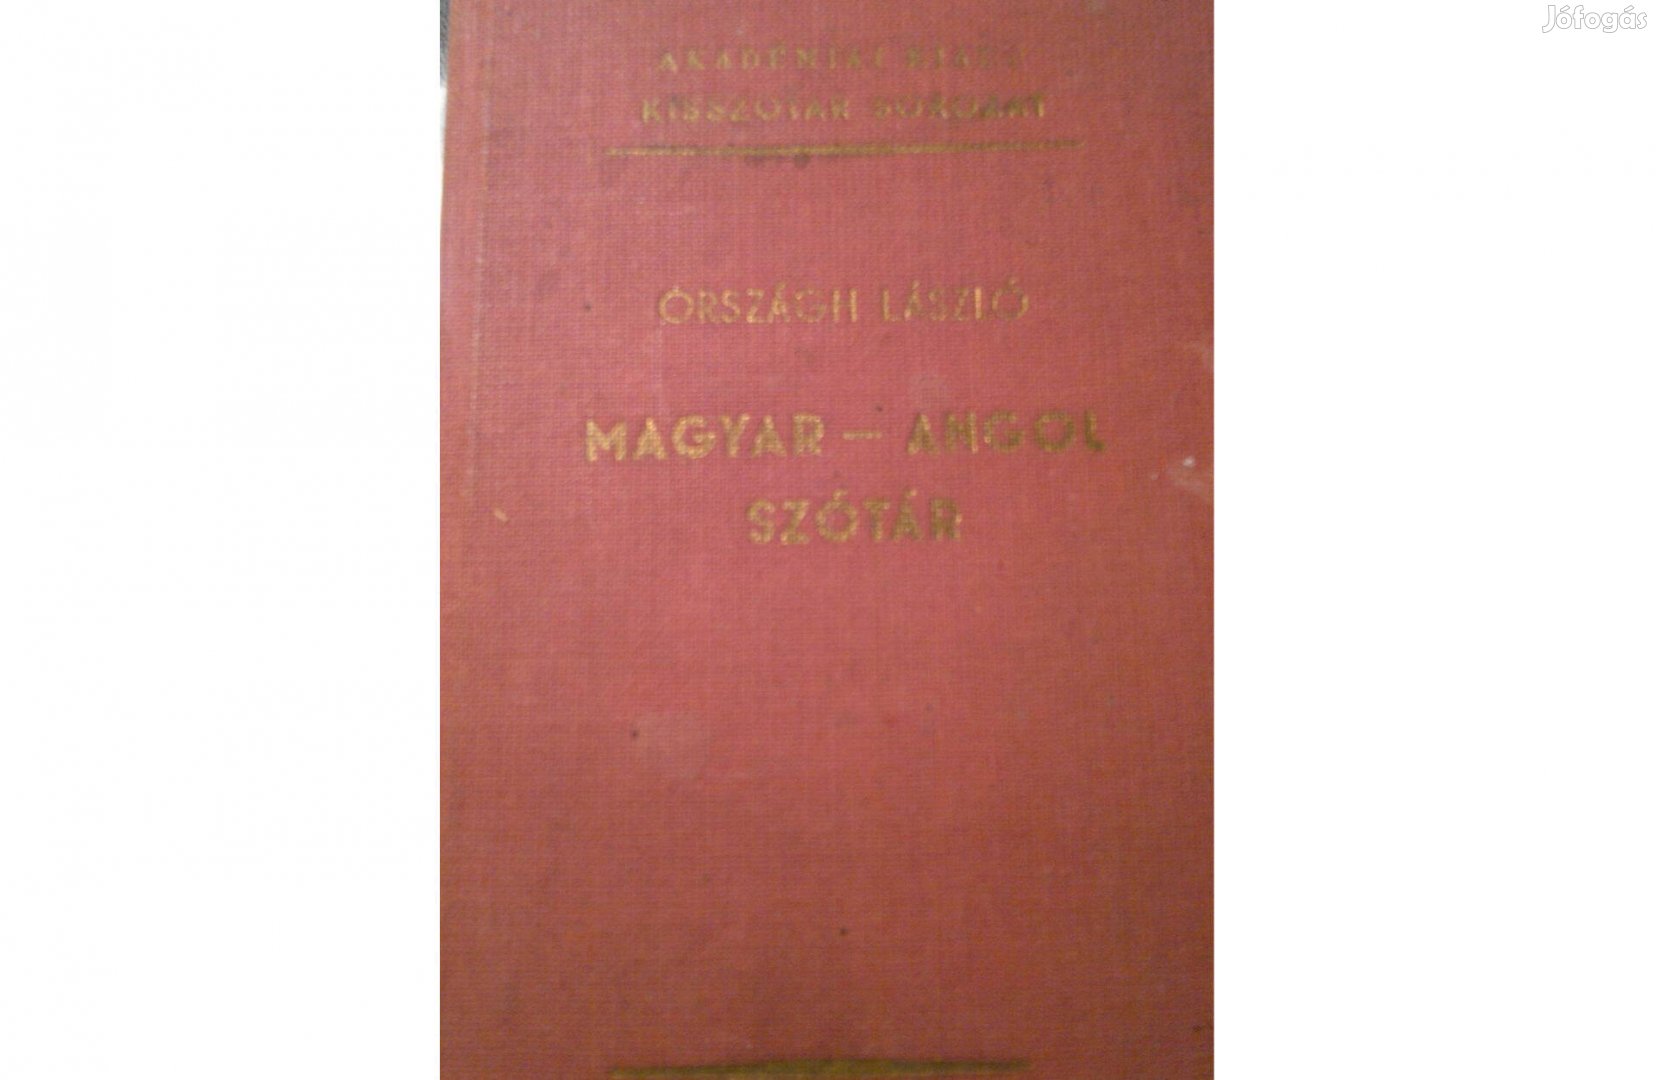 Magyar-angol szótár kisszótár sorozat akadémia kiadó:1977